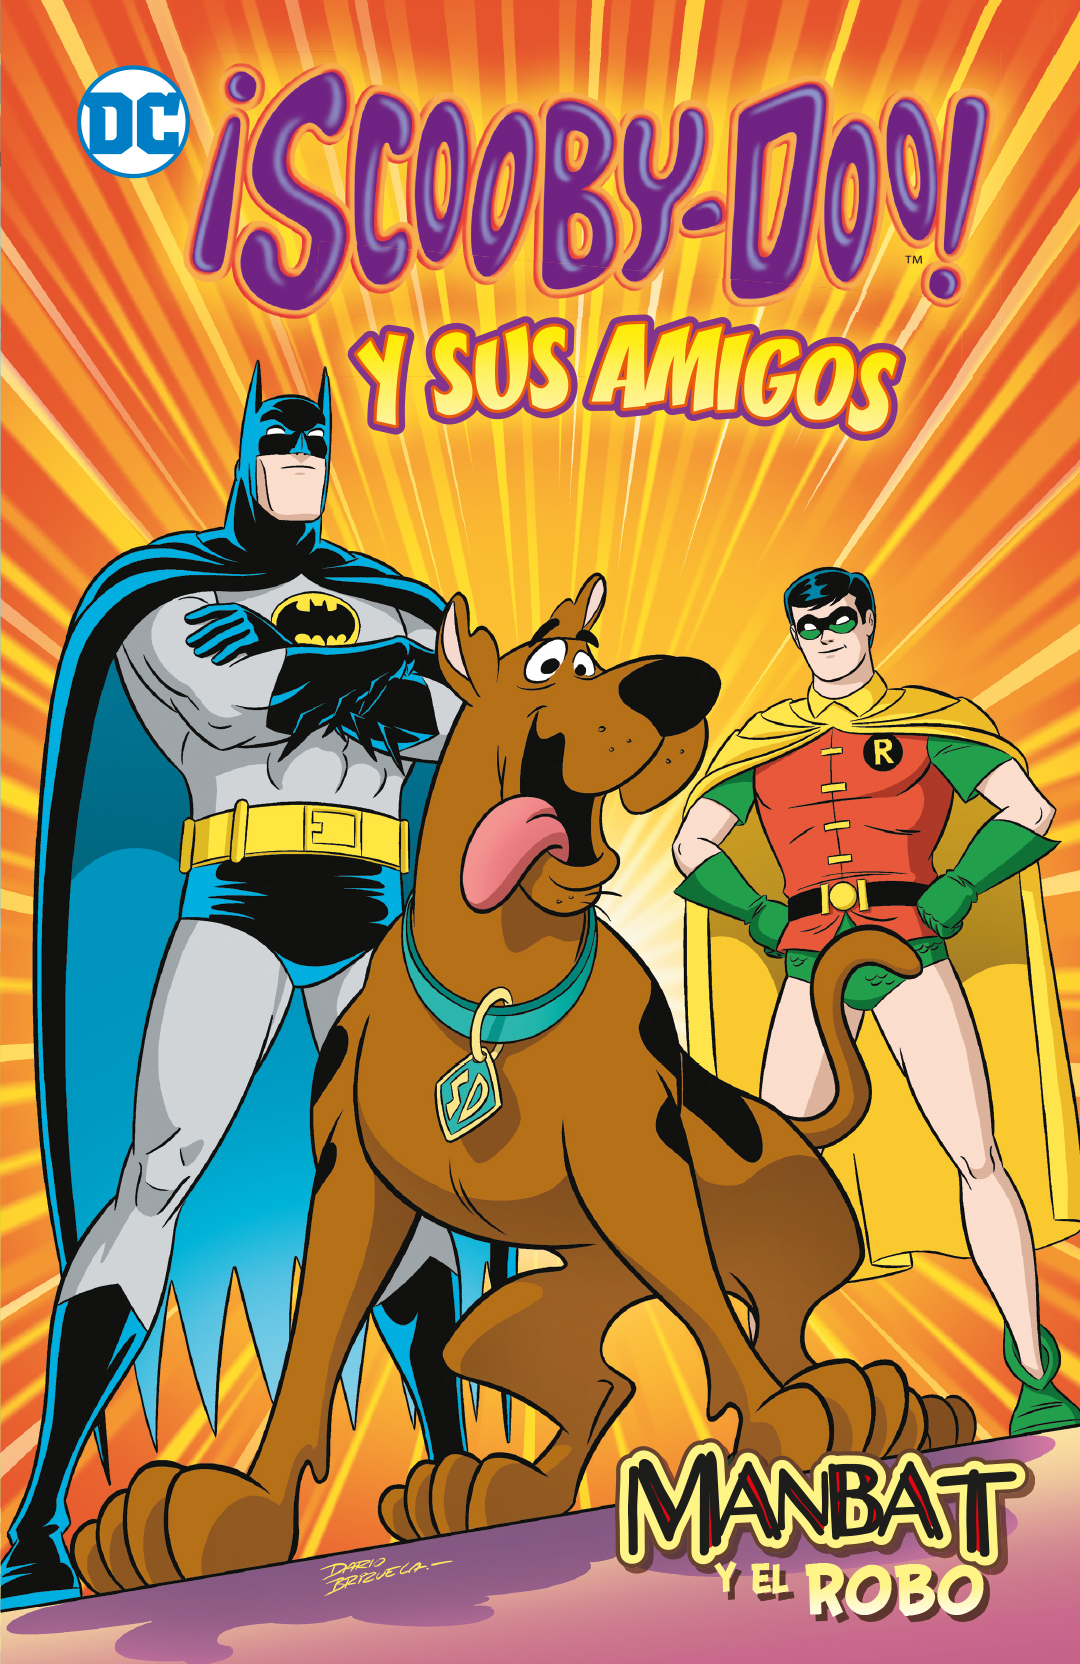 Scooby-Doo! y sus amigos vol. 1: Manbat y el robo (Biblioteca Super Kodomo)